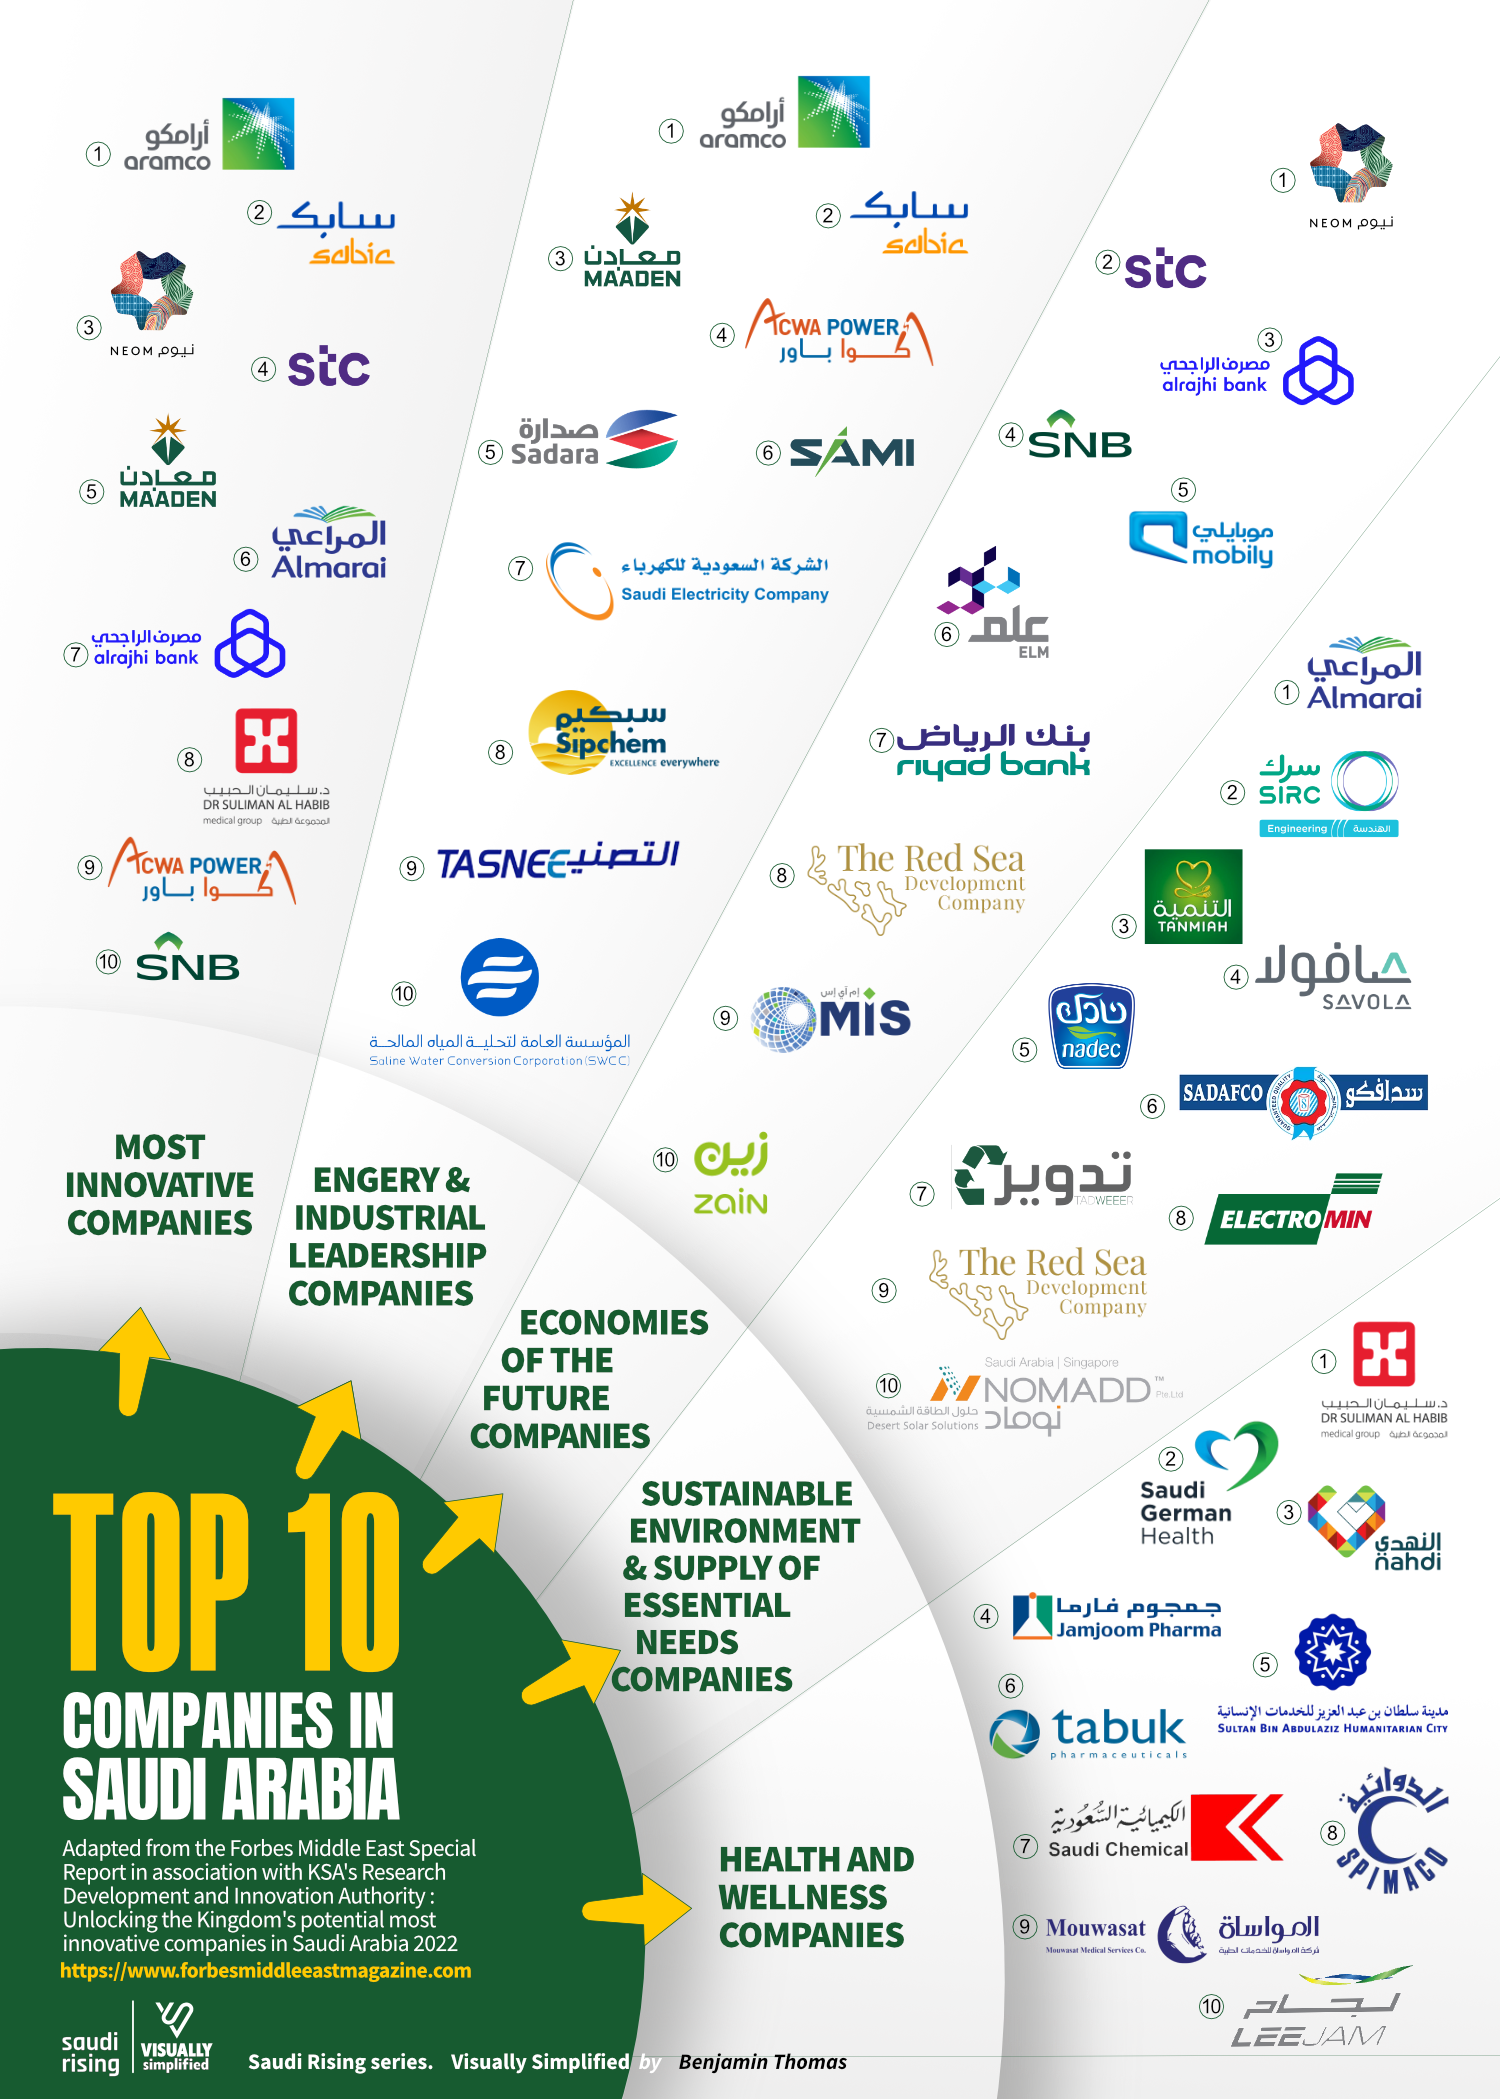 Top 10 Saudi Companies- Visually Simplified by Benjamin Thomas